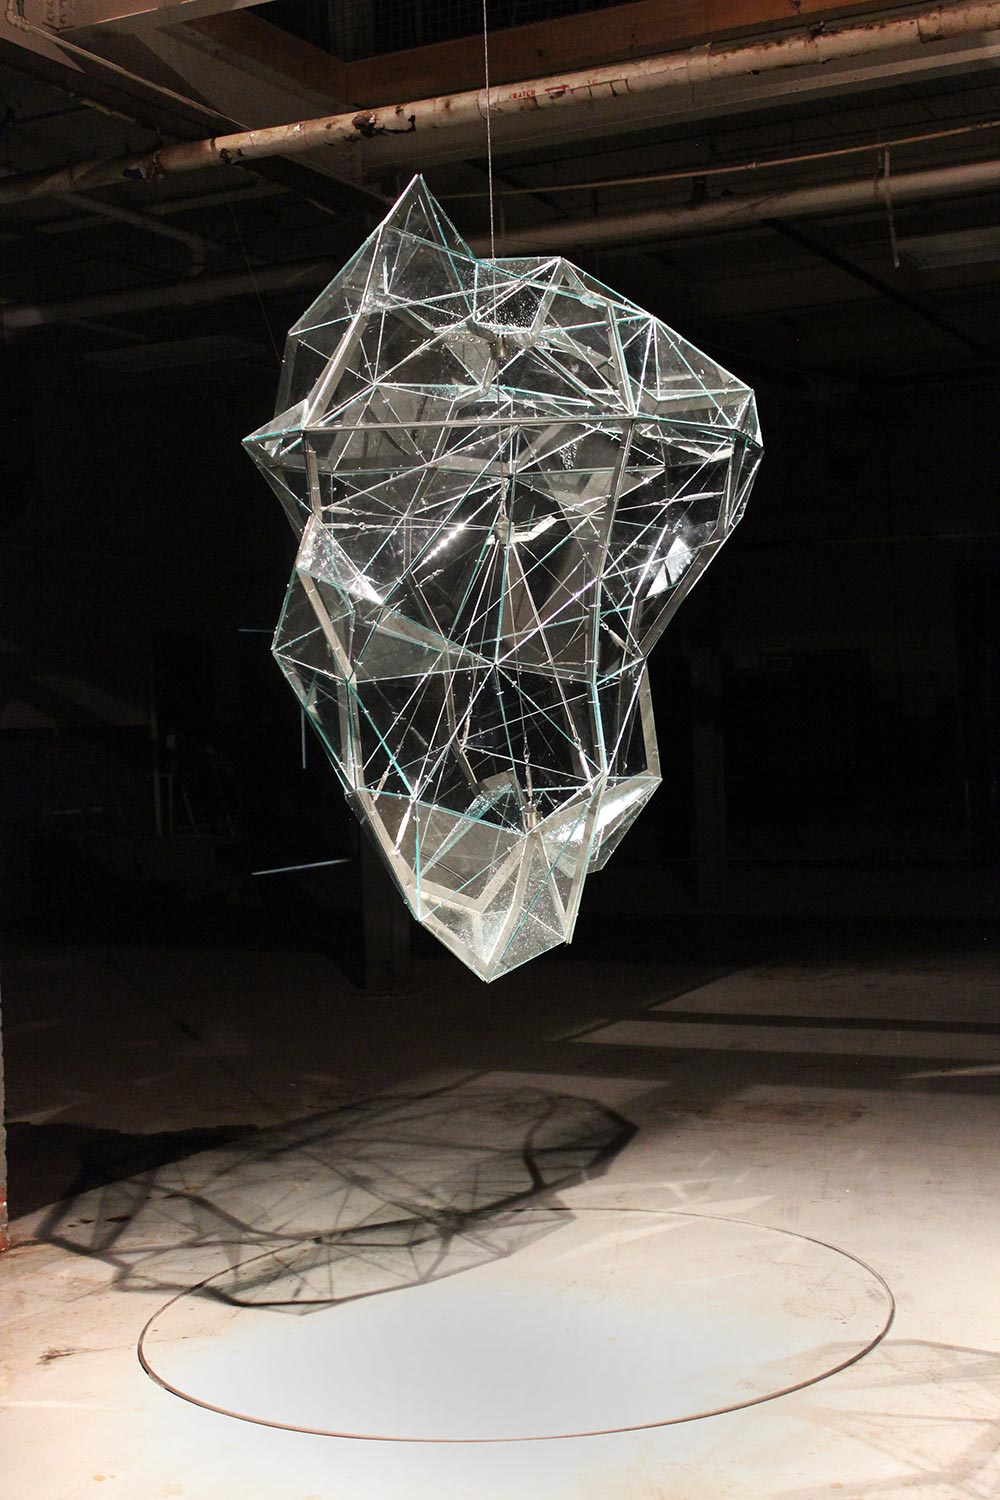 szklana praca 3D w formie meteorytu, zawieszona w przestrzeni